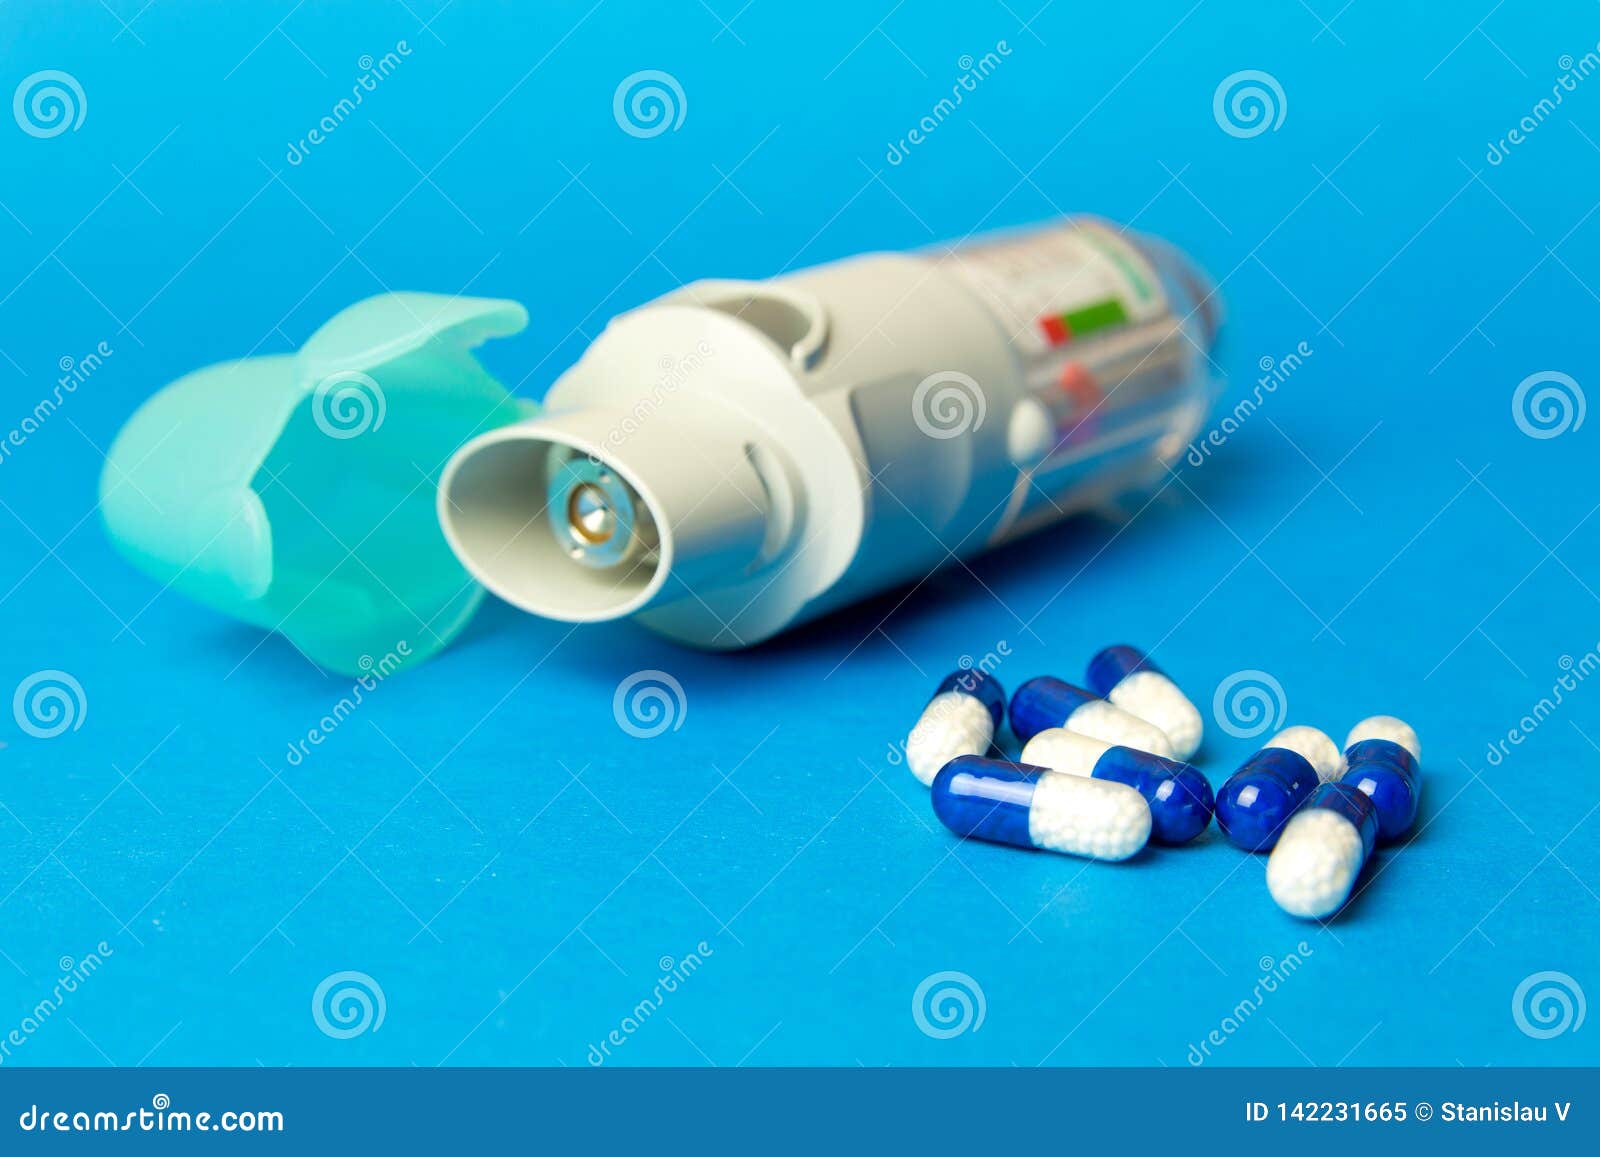 Препараты для больных астмой. Ингалятор с таблетками. Таблетки для астматиков. Астма лекарства. Лекарство от астмы.